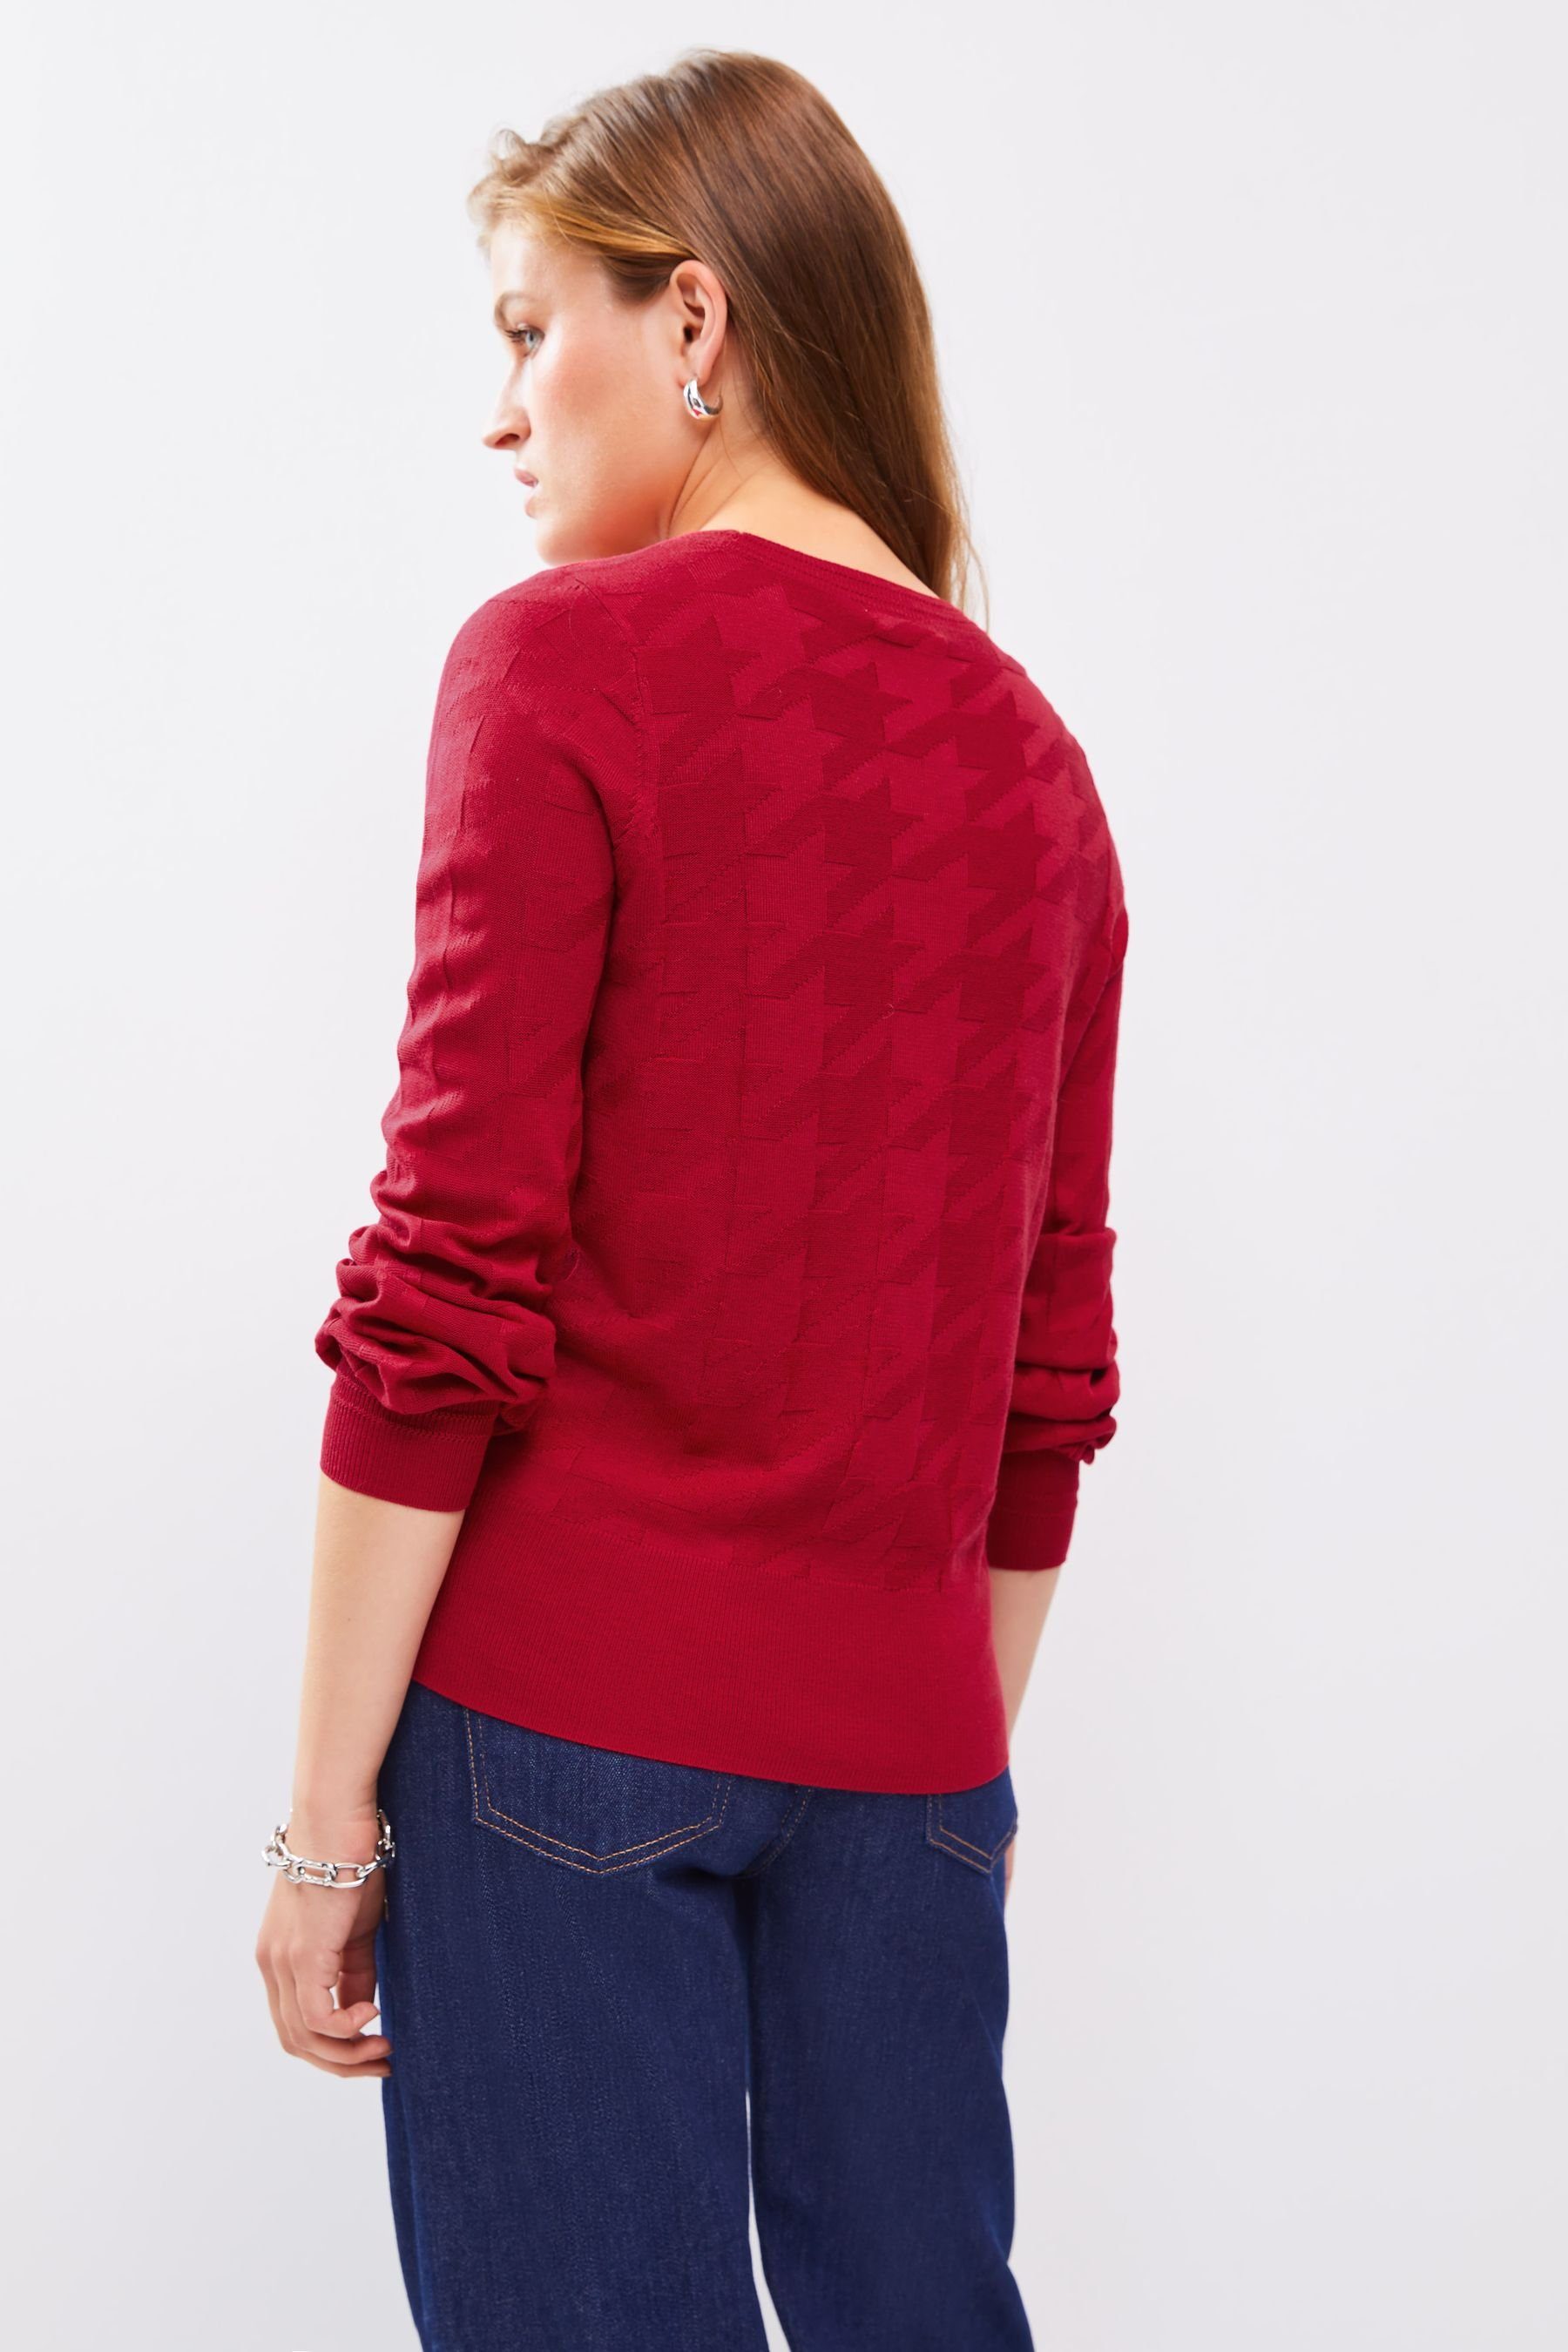 Next mit (1-tlg) Red Pullover Rundhalspullover Textured Rundhalsausschnitt